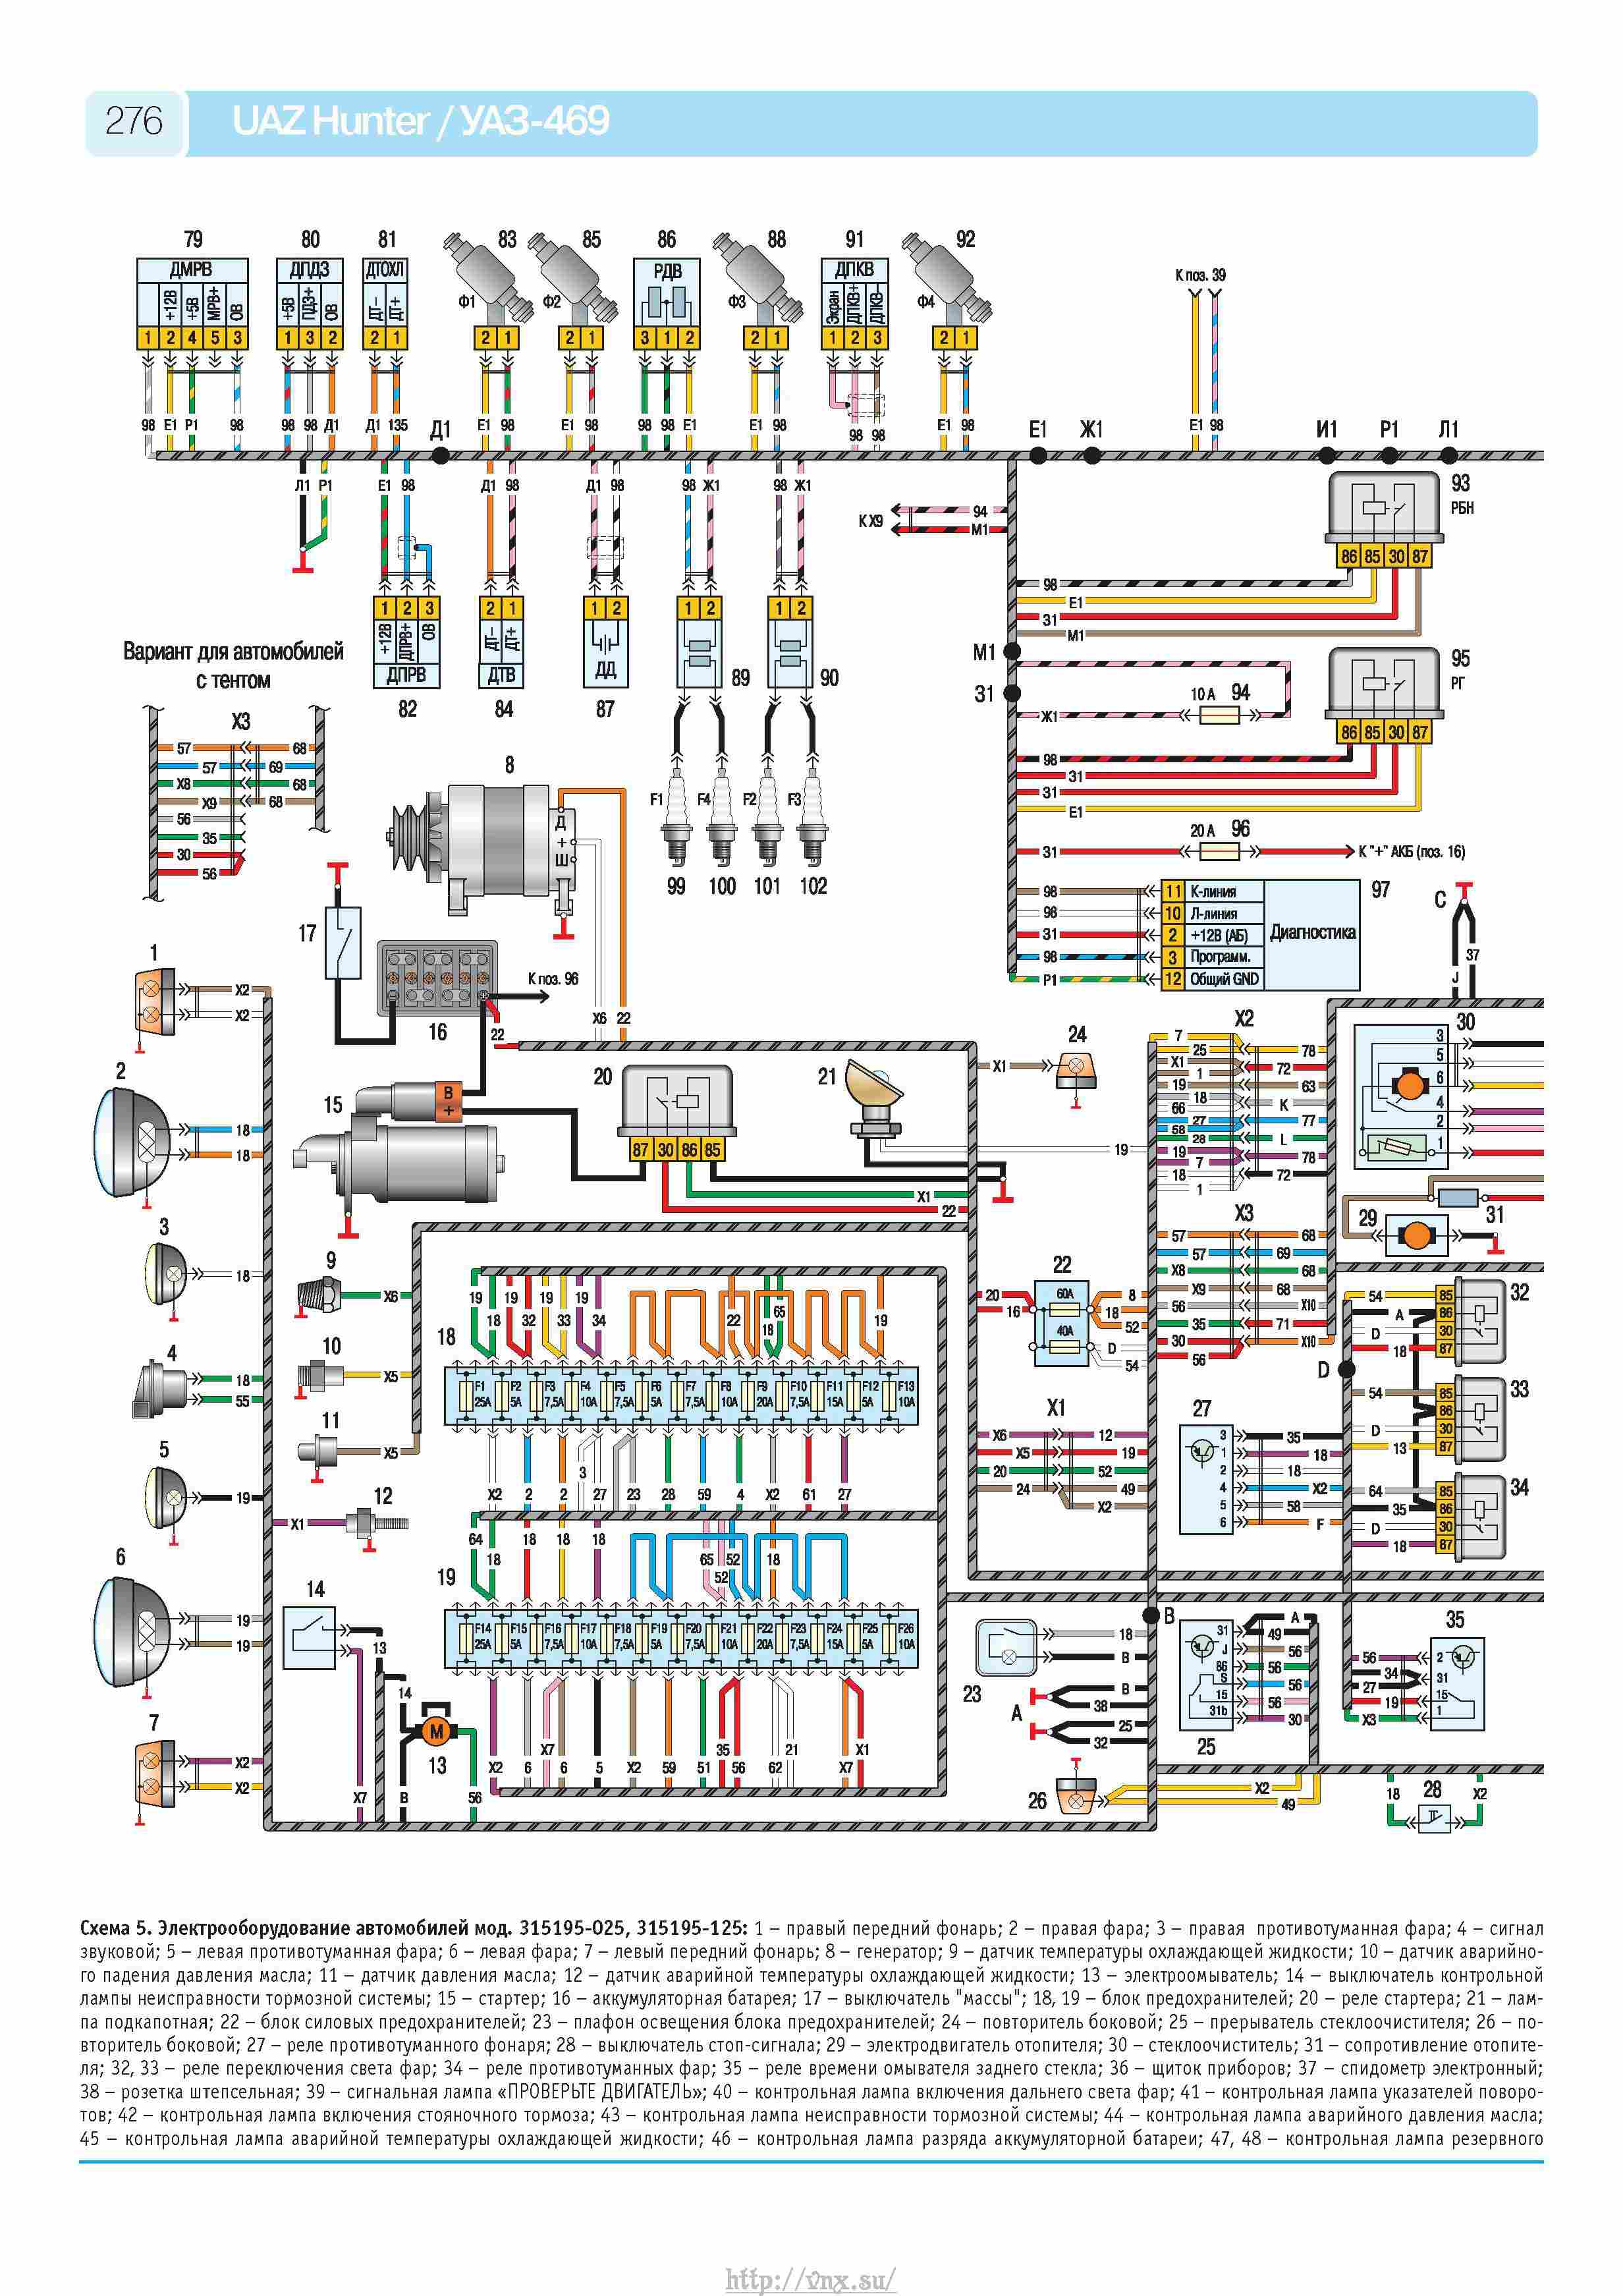 Схема электропроводки уаз 31519: цветная